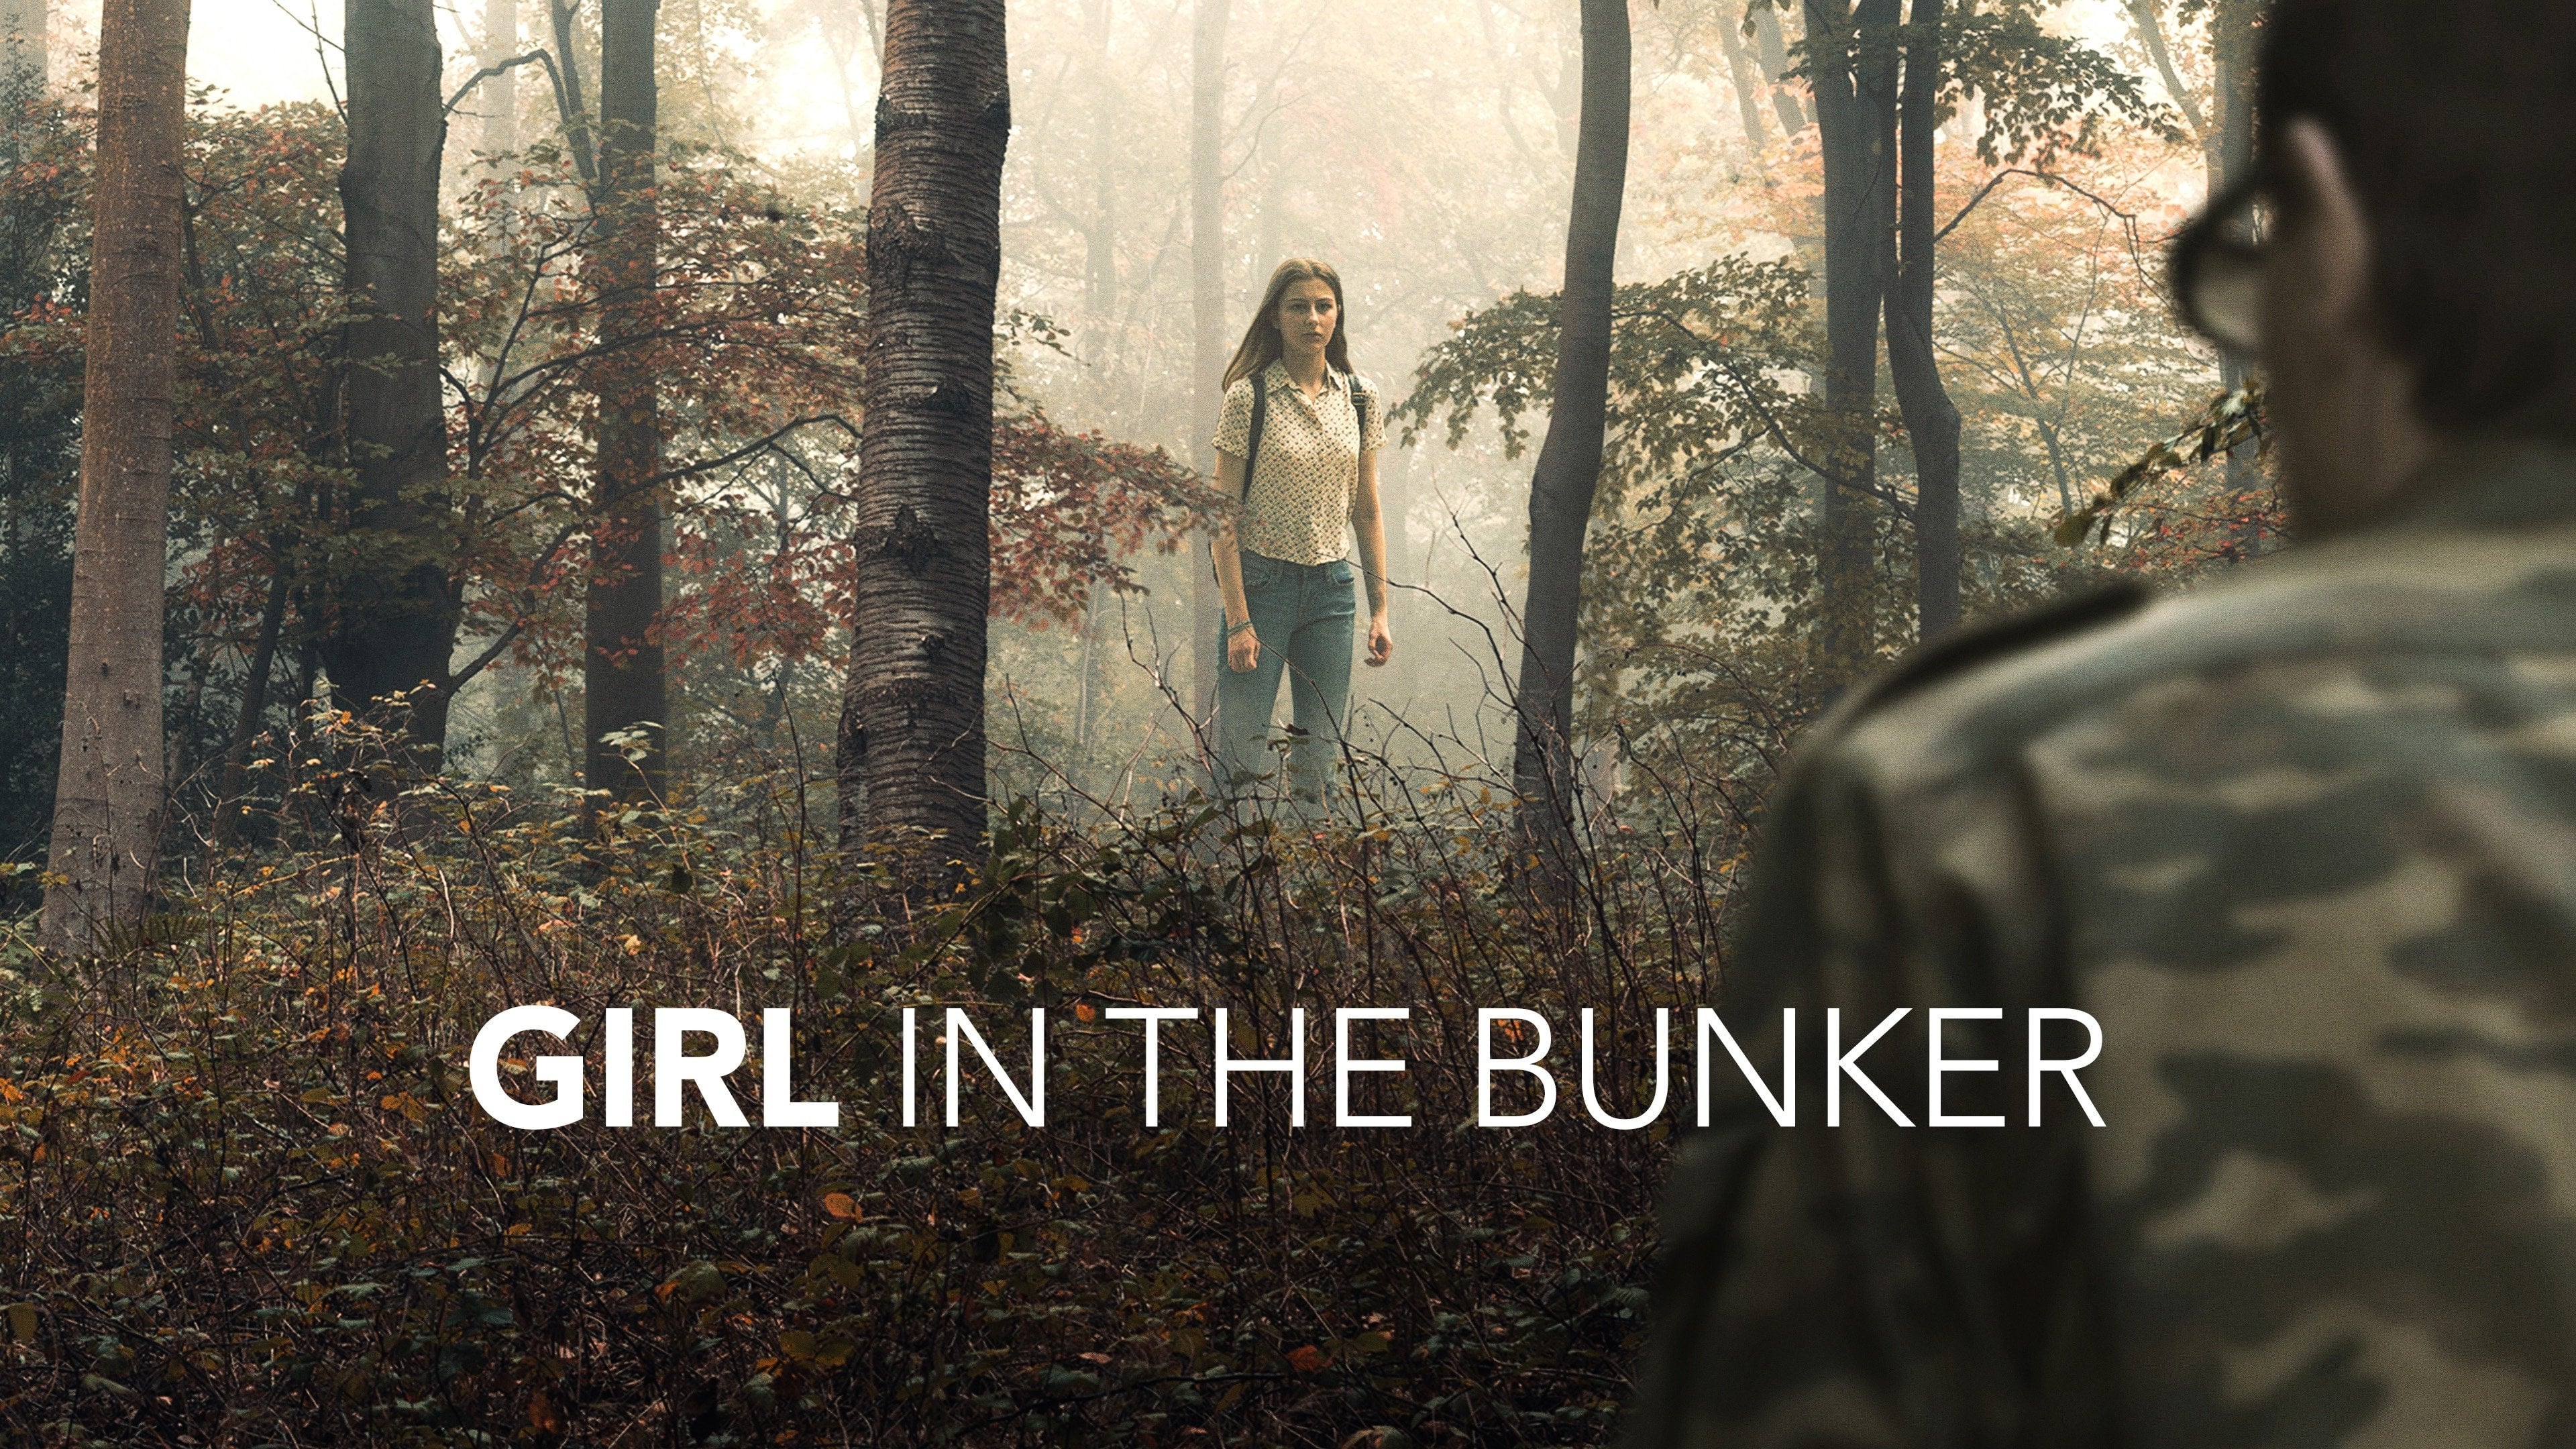 Girl in the Bunker (2018)